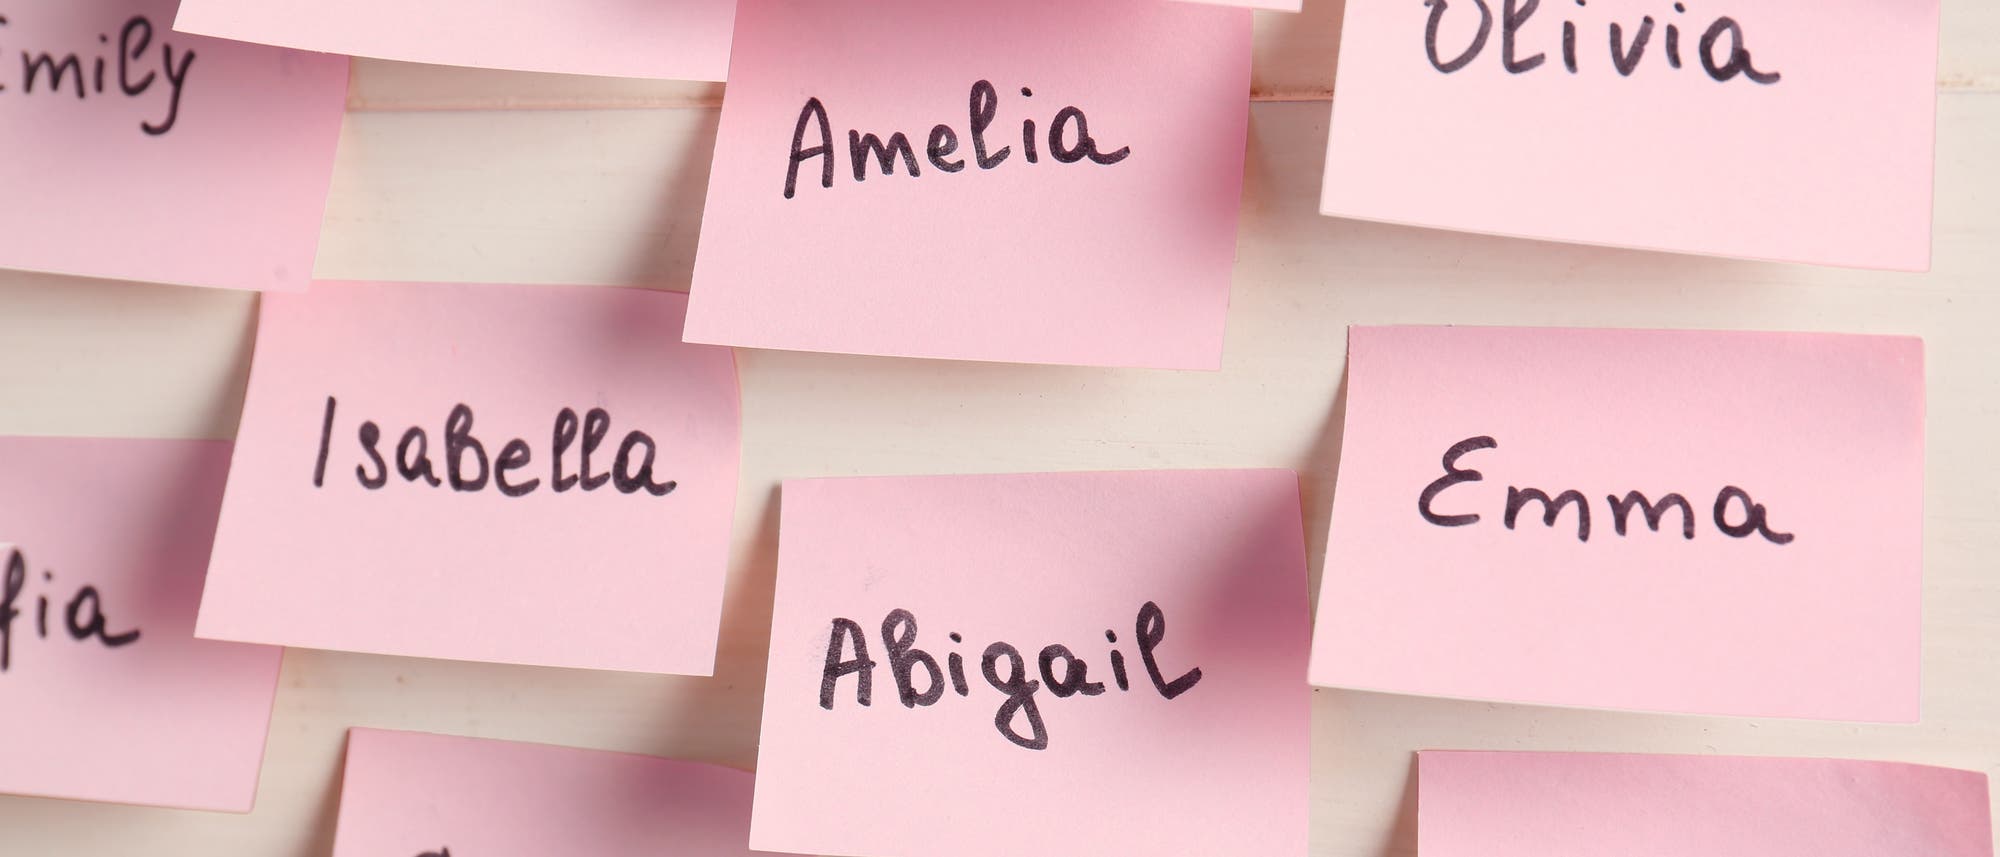 Frauennamen auf rosafarbenen Post-its